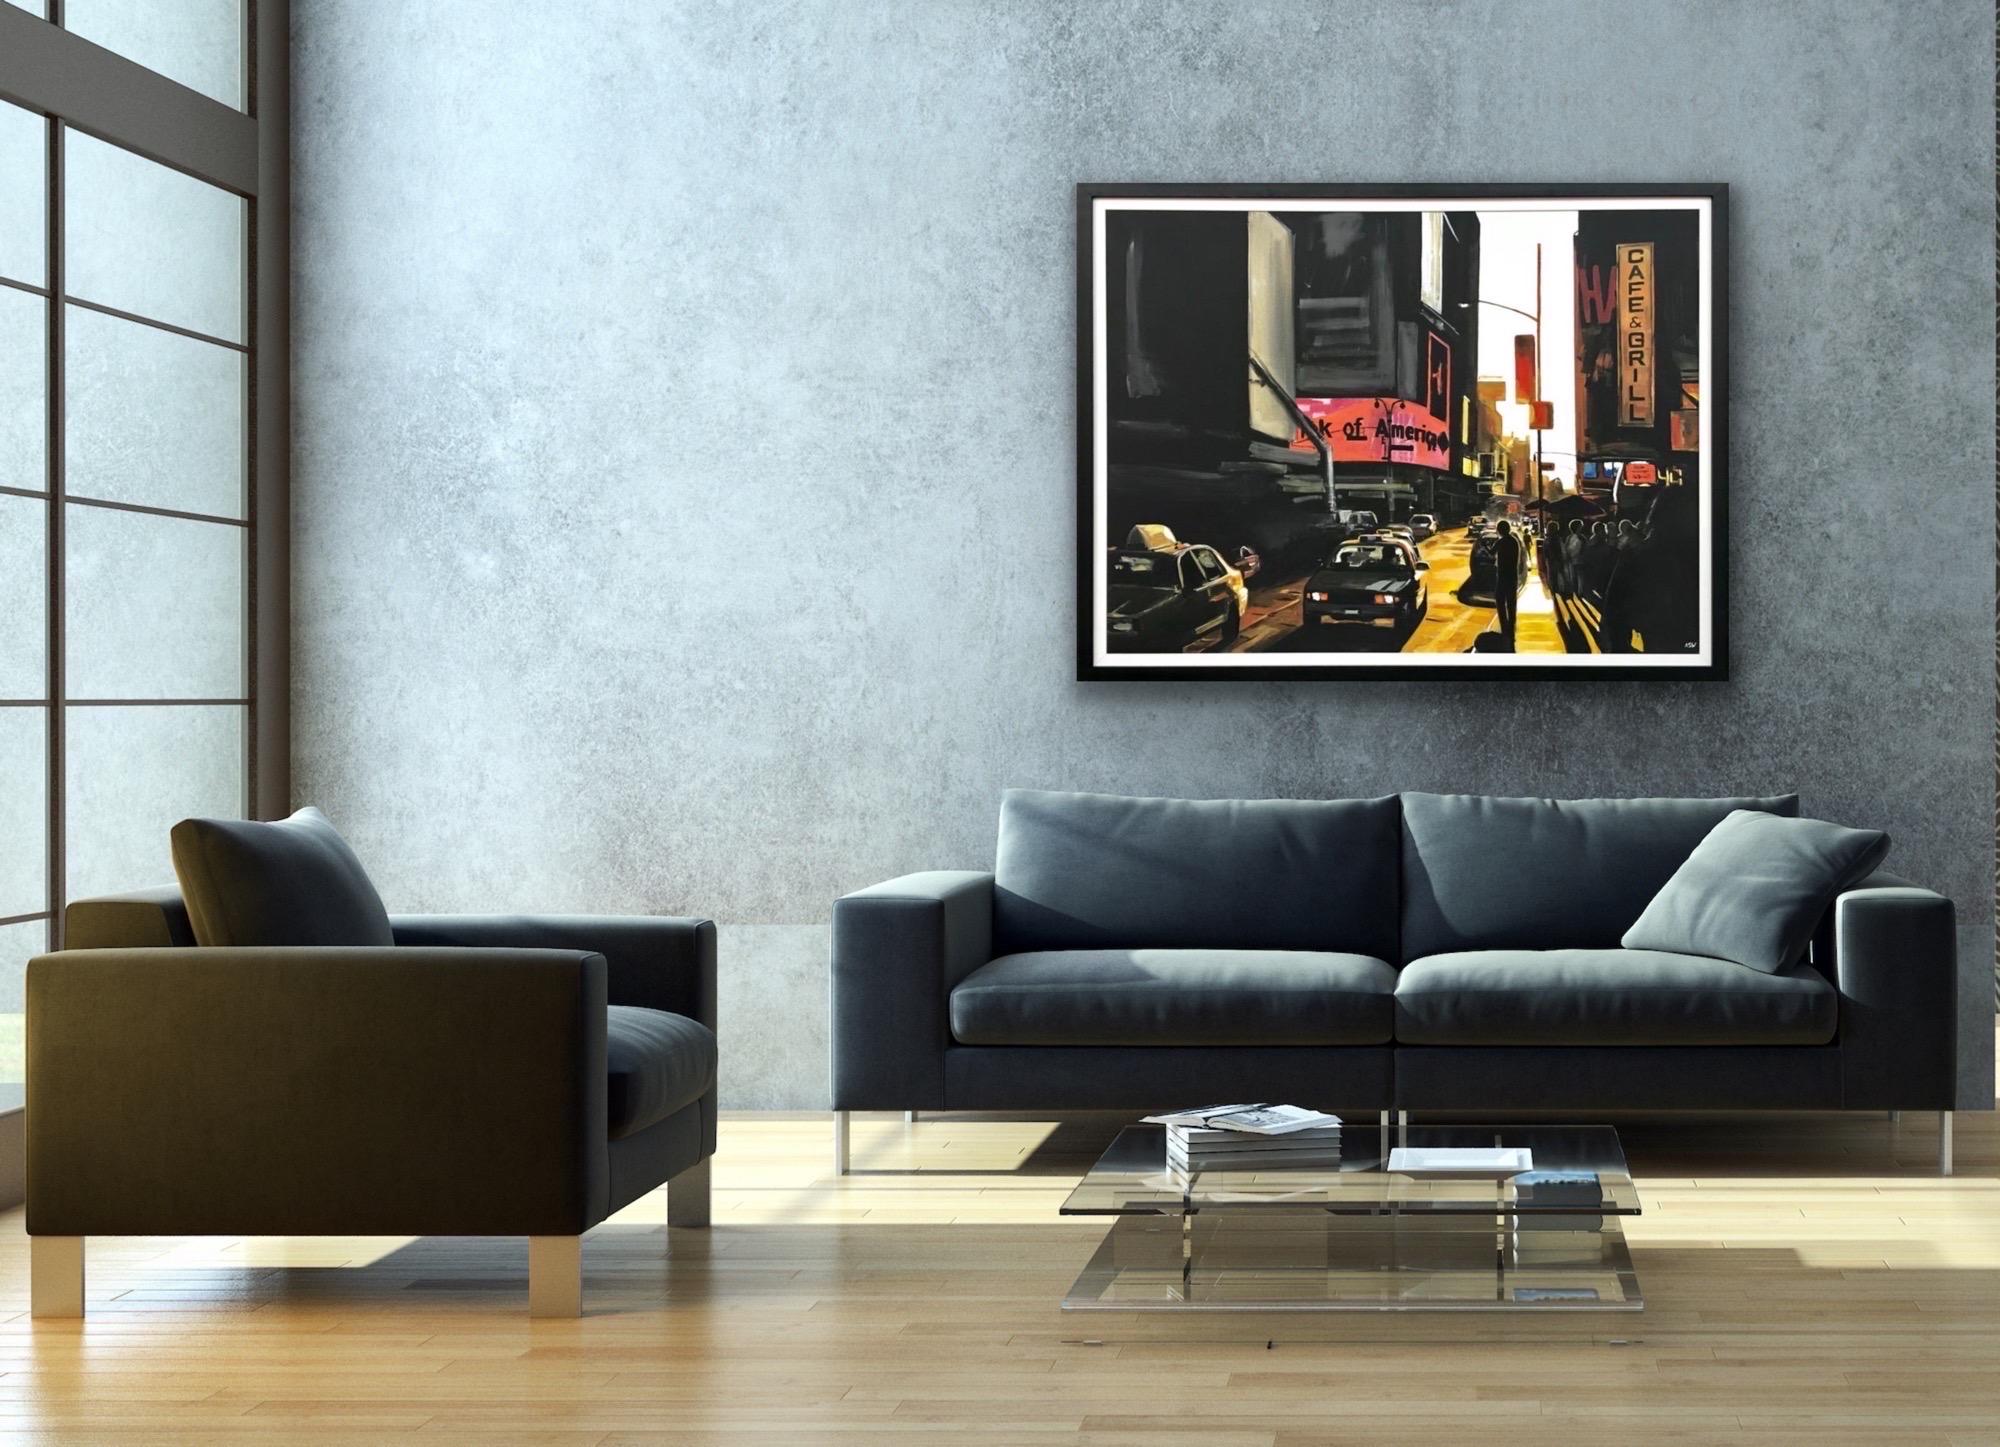 Großes stimmungsvolles schwarz-gelbes Gemälde des Broadway in New York City von der britischen Landschaftsmalerin Angela Wakefield. Dieses einzigartige Original ist Teil ihrer New Yorker Serie und wurde bereits in Ausstellungen in England gezeigt